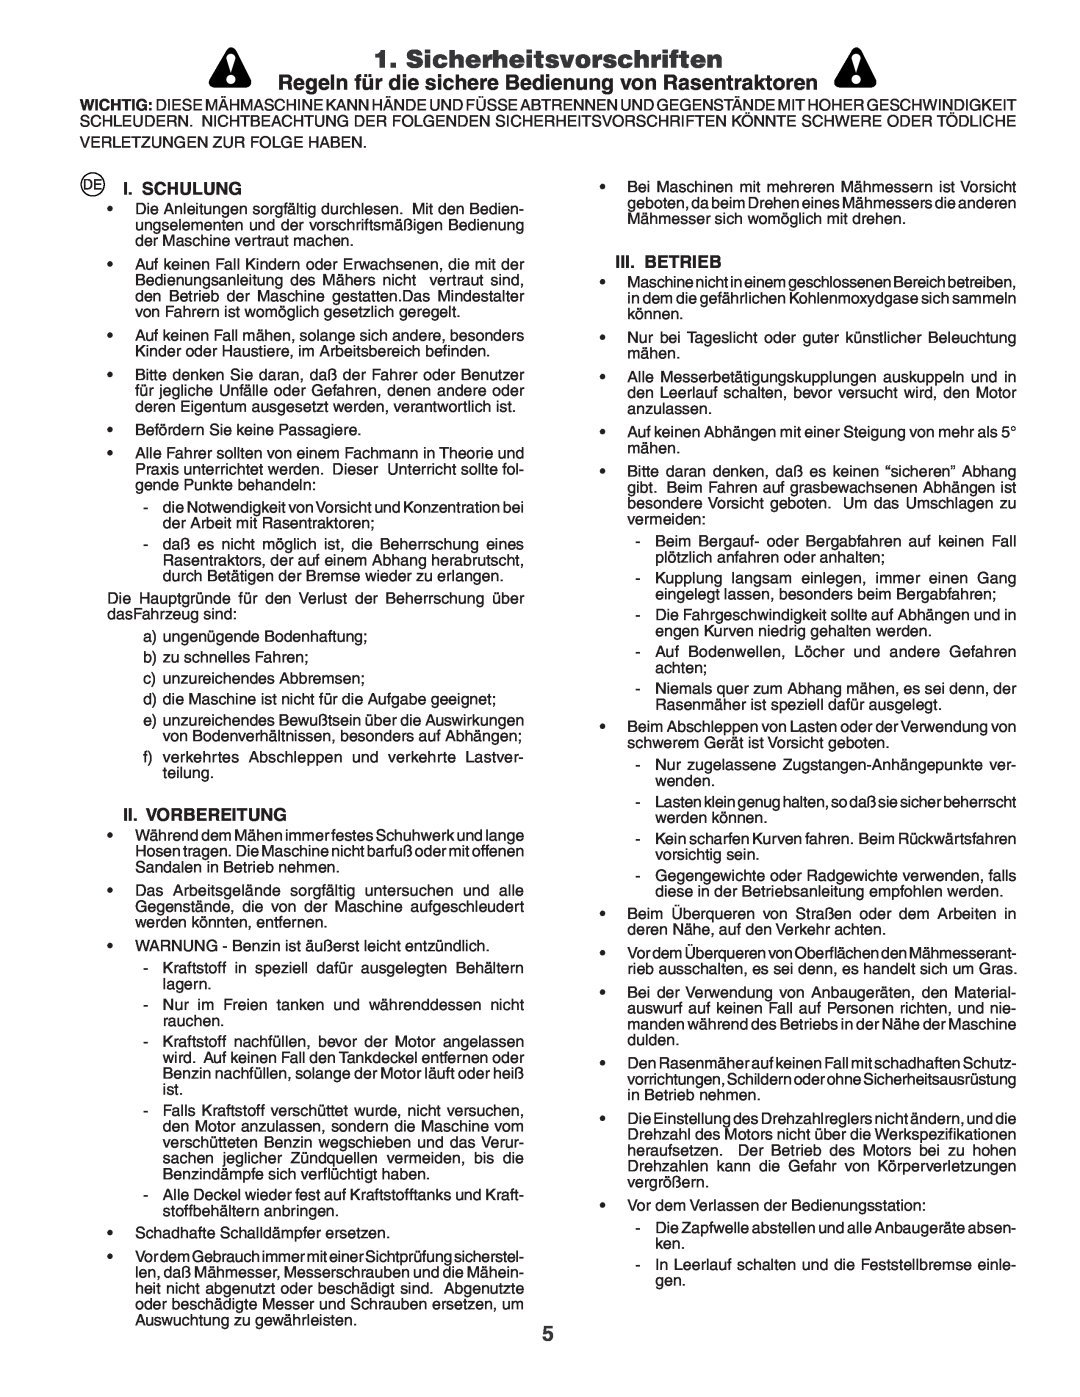 Husqvarna CTH210xp Sicherheitsvorschriften, Regeln für die sichere Bedienung von Rasentraktoren, I. Schulung, Iii. Betrieb 